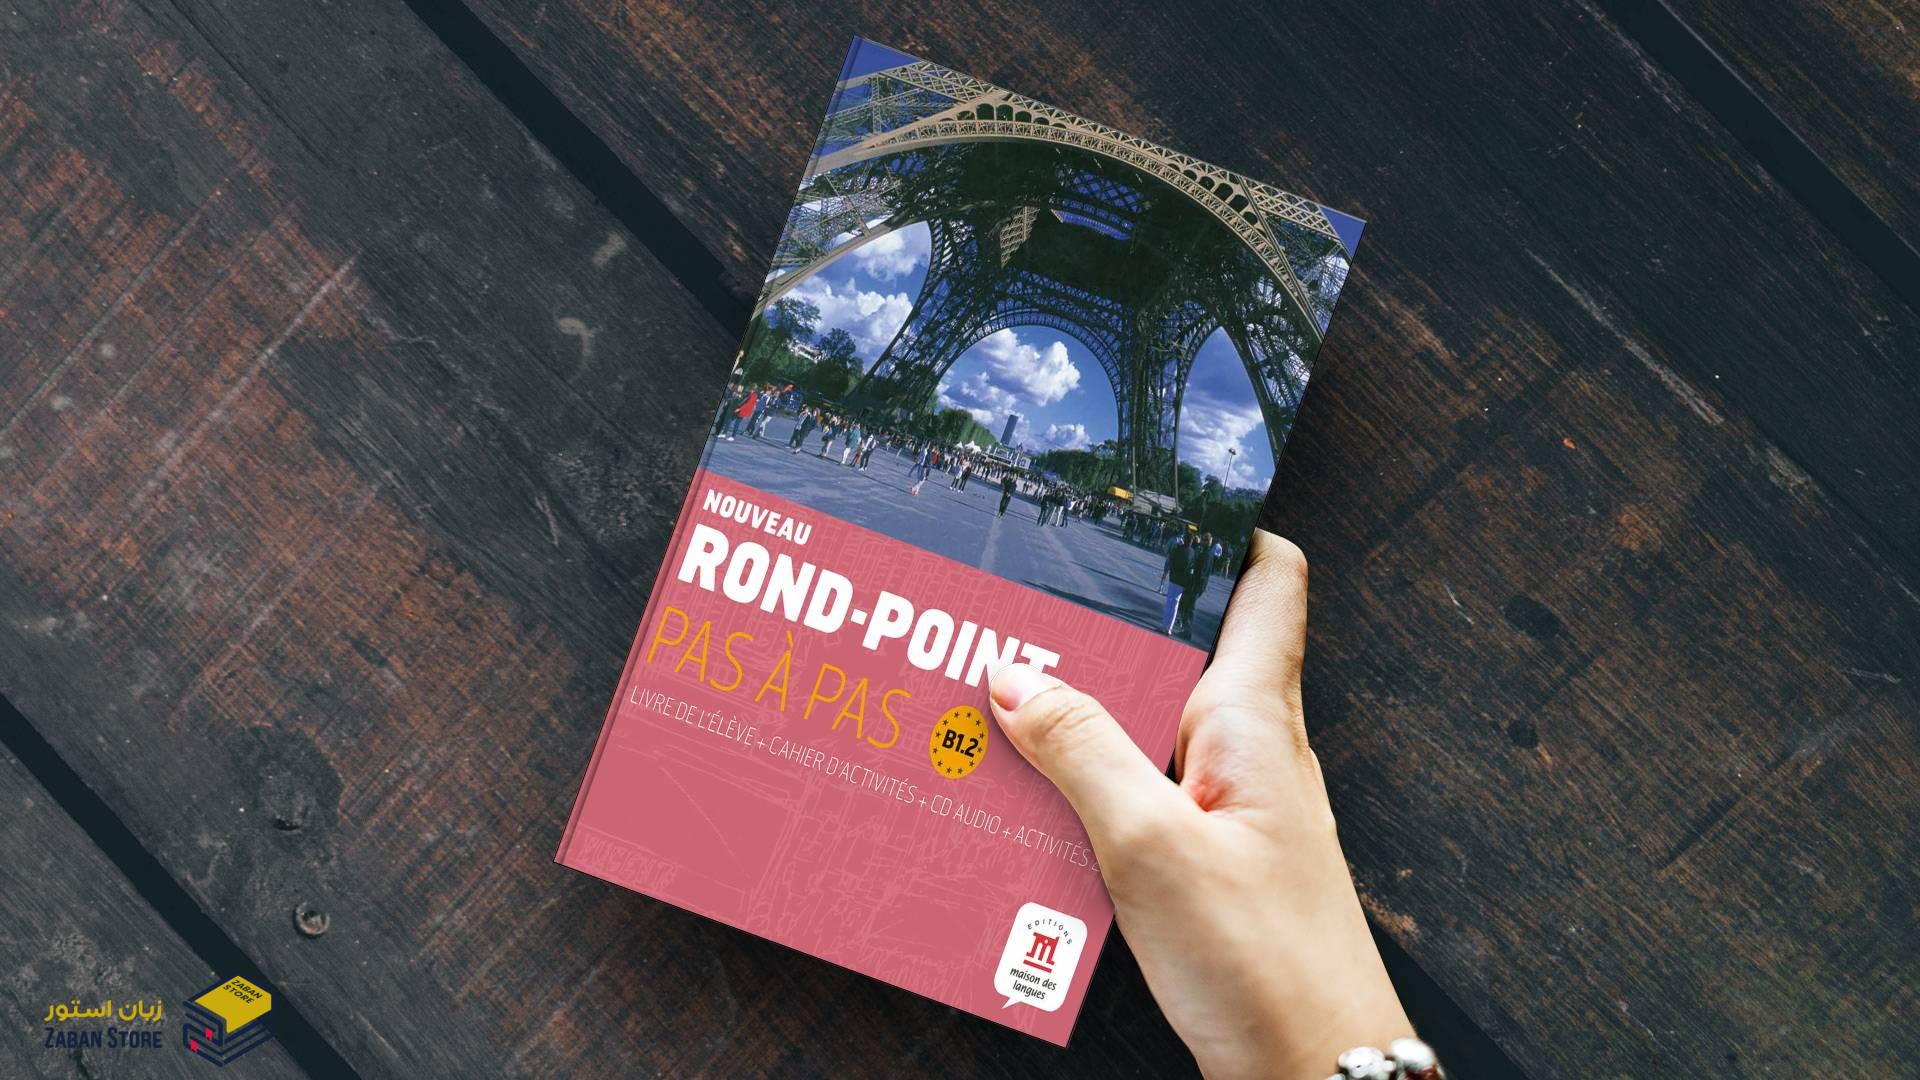 خرید کتاب زبان فرانسوی | فروشگاه اینترنتی کتاب زبان فرانسوی | Nouveau Rond Point Pas a Pas B1.2 | روند پوینت